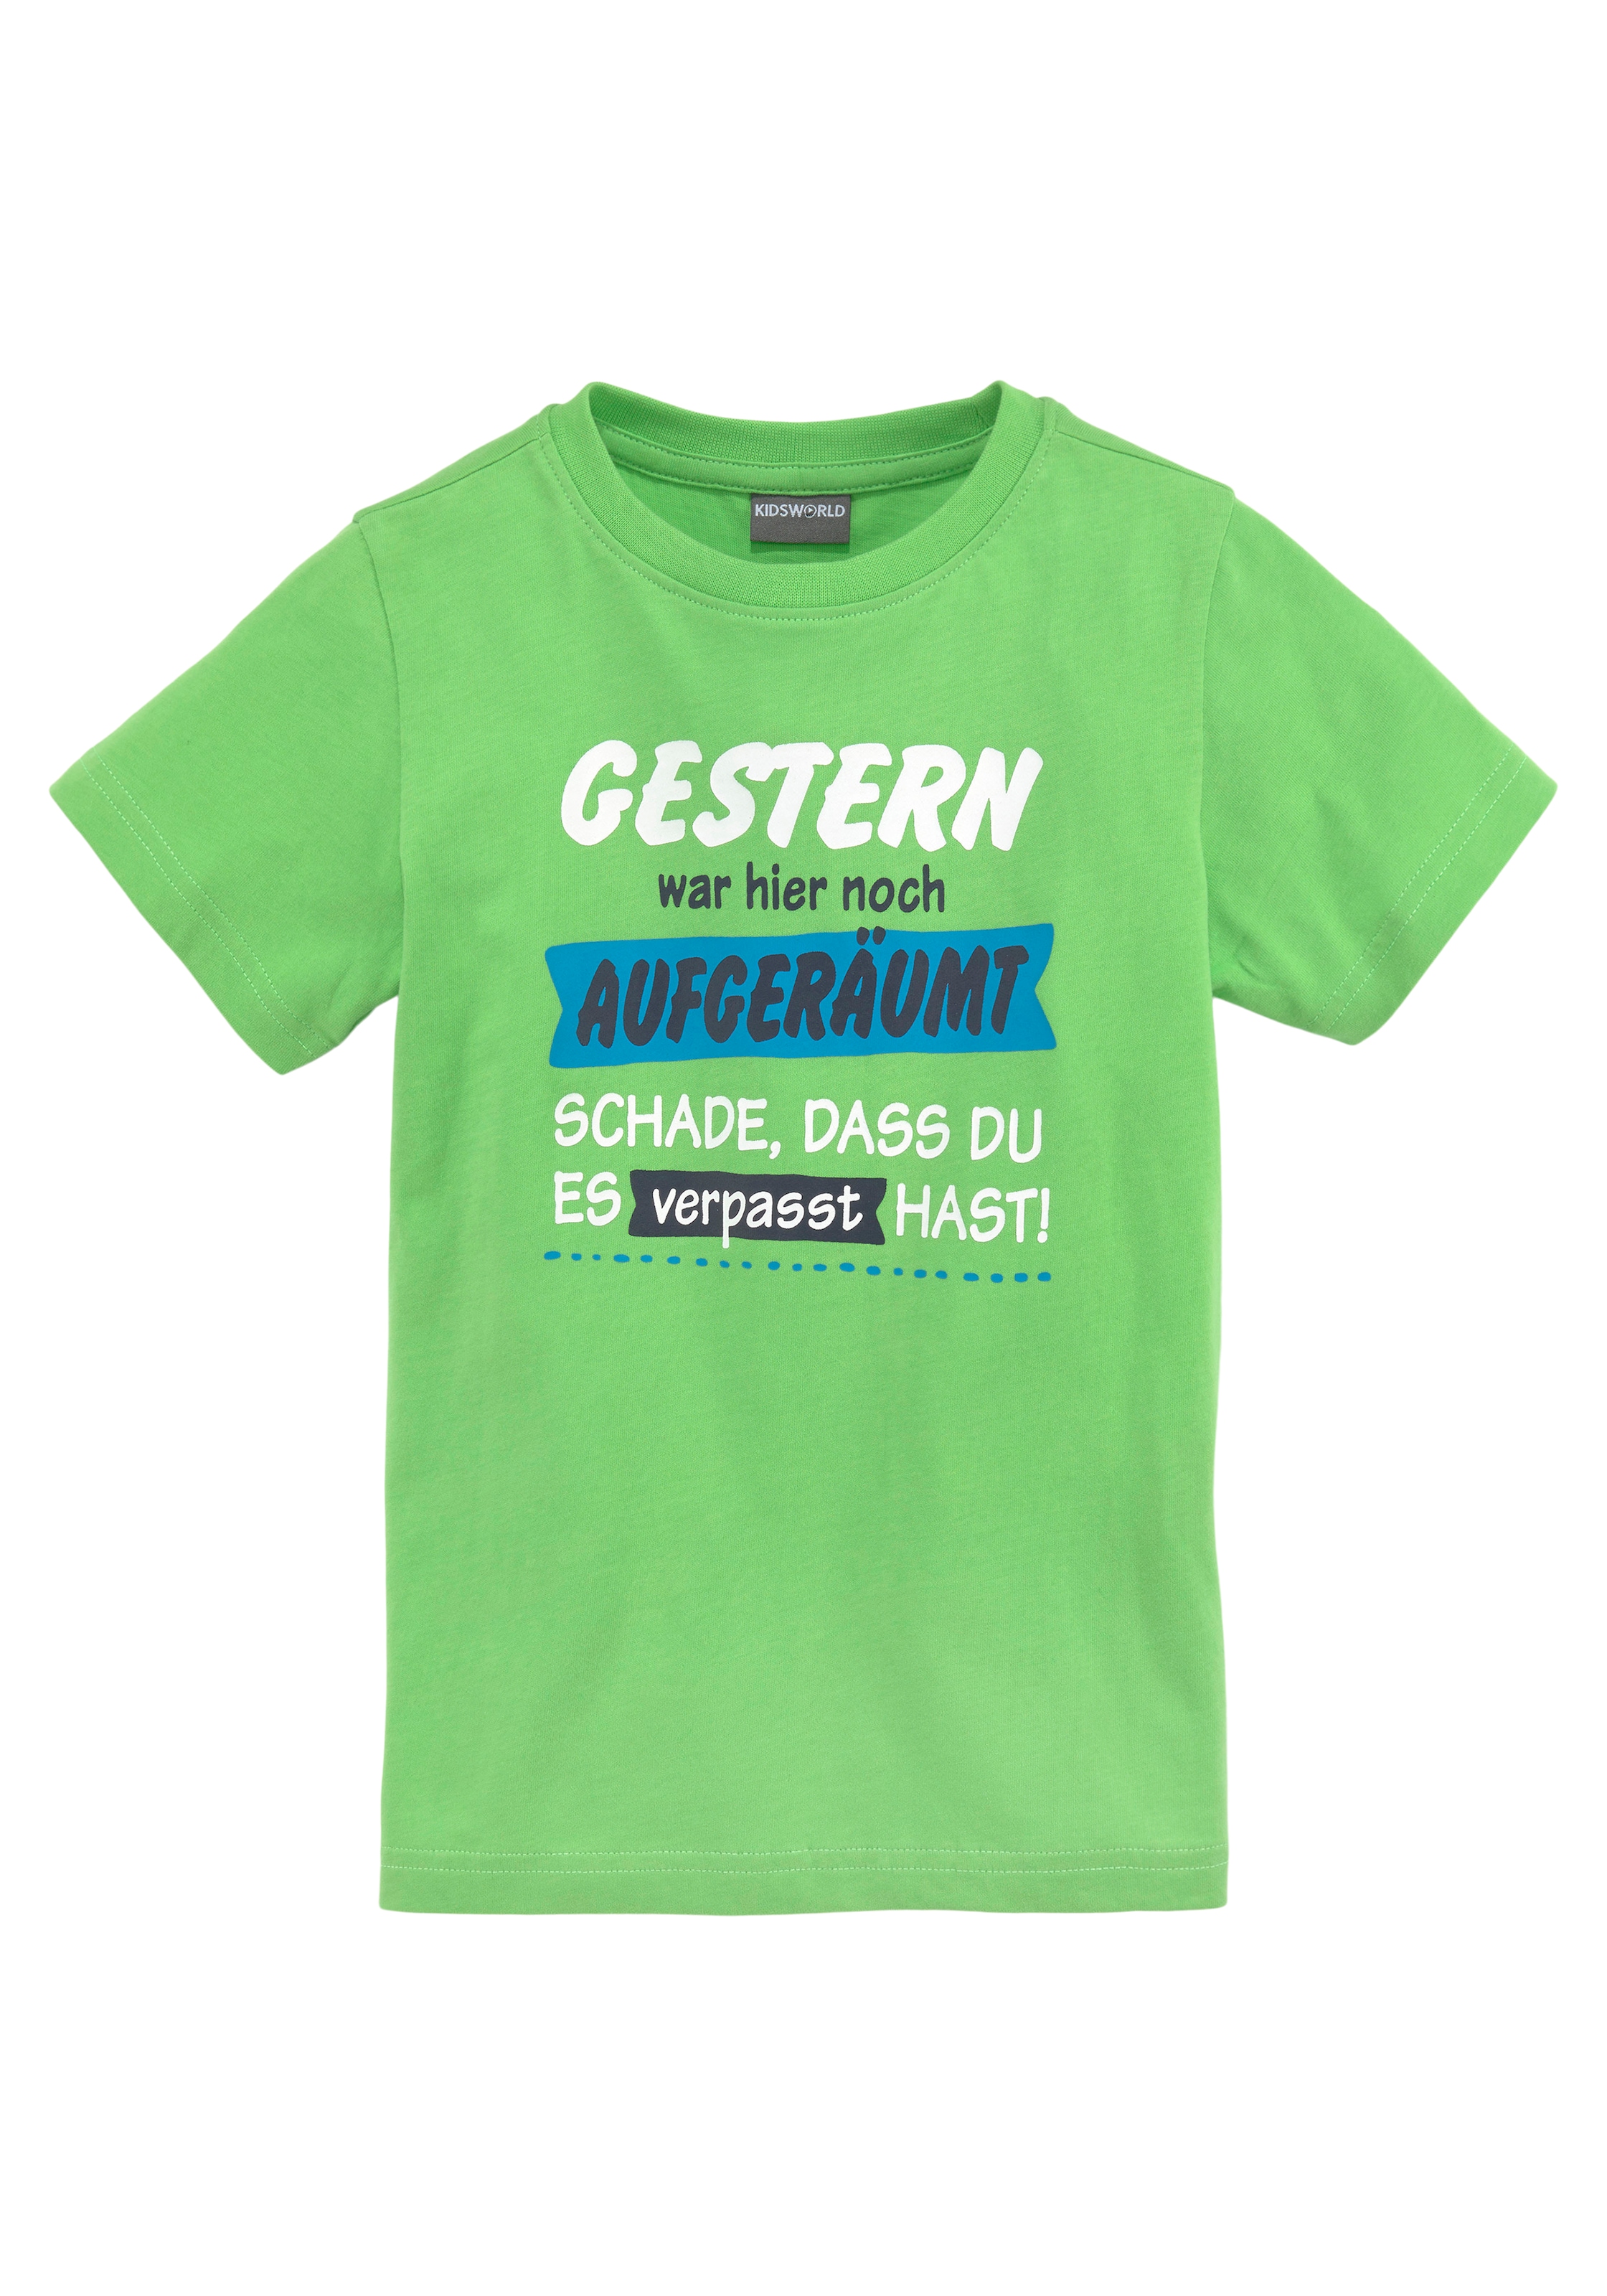 KIDSWORLD T-Shirt »GERTERN WAR HIER NOCH AUGERÄUMT...«, Sprücheshirt für kleine Jungen